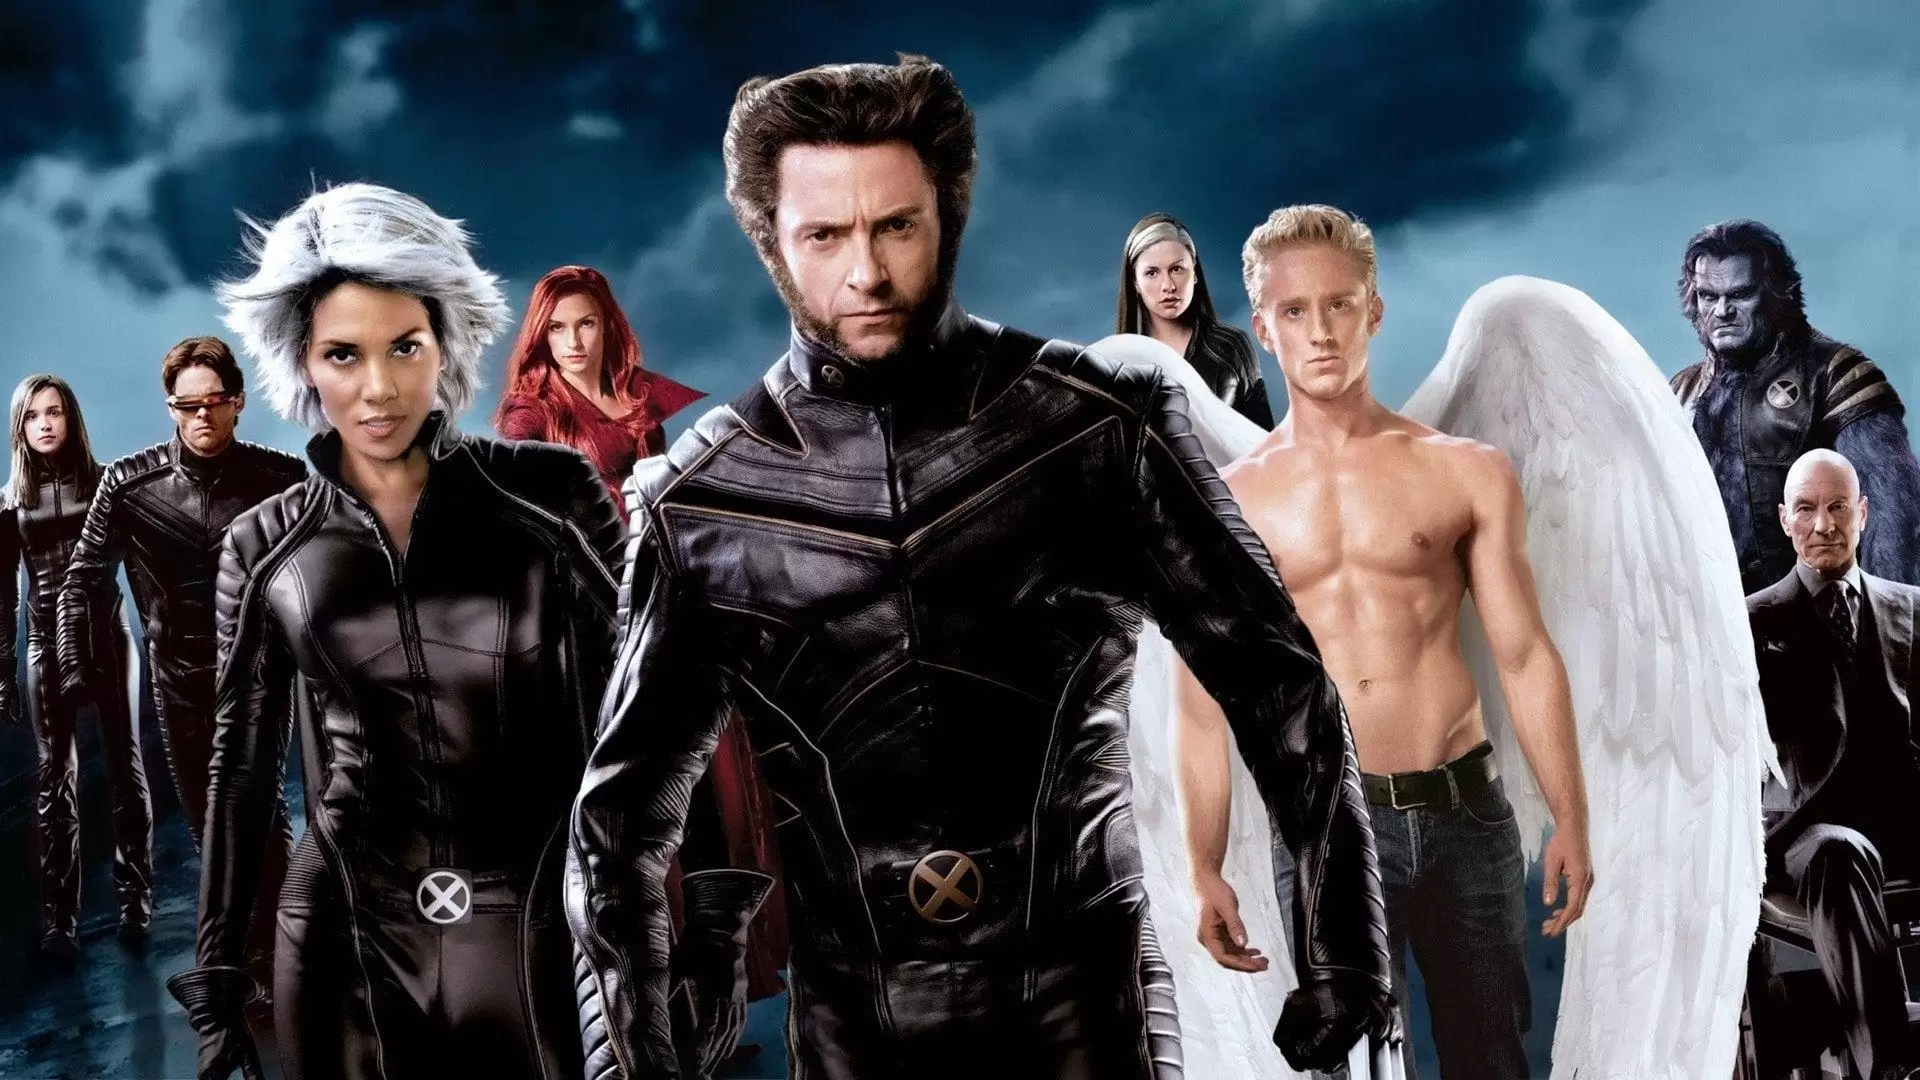 دانلود فیلم X-Men: The Last Stand 2006 (مردان ایکس: آخرین ایستادگی) با زیرنویس فارسی و تماشای آنلاین